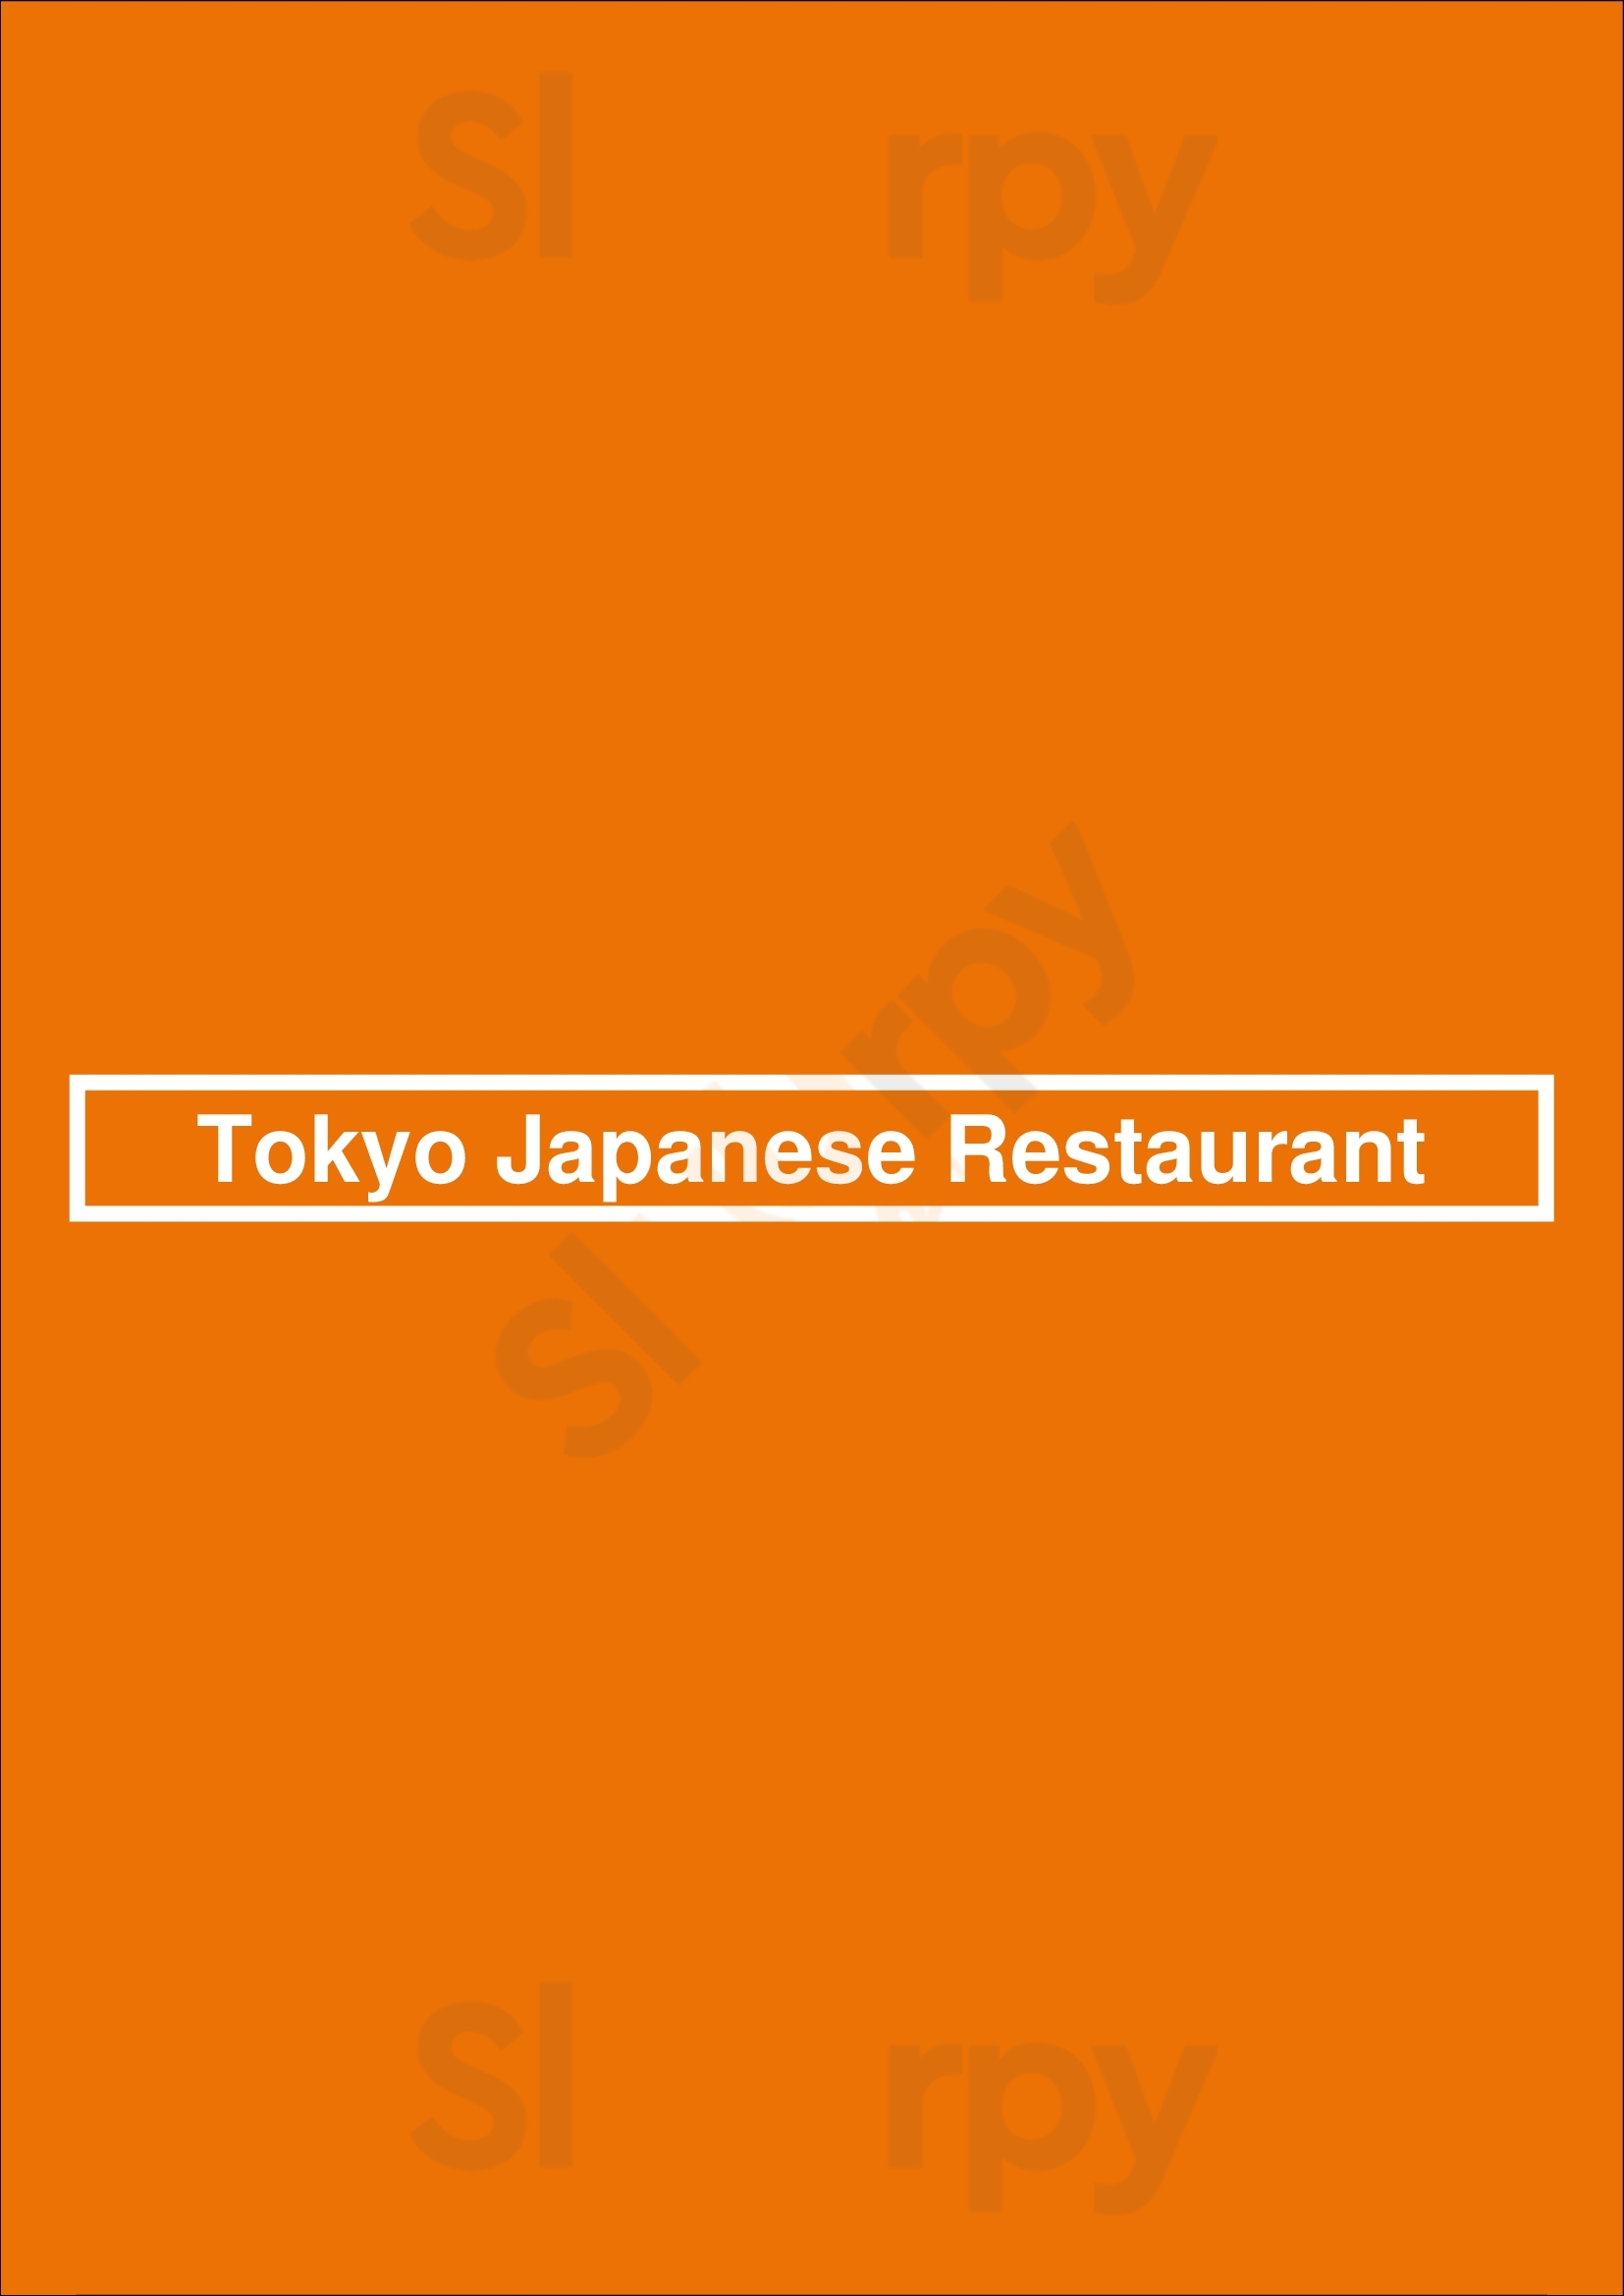 Tokyo Japanese Restaurant Oklahoma City Menu - 1